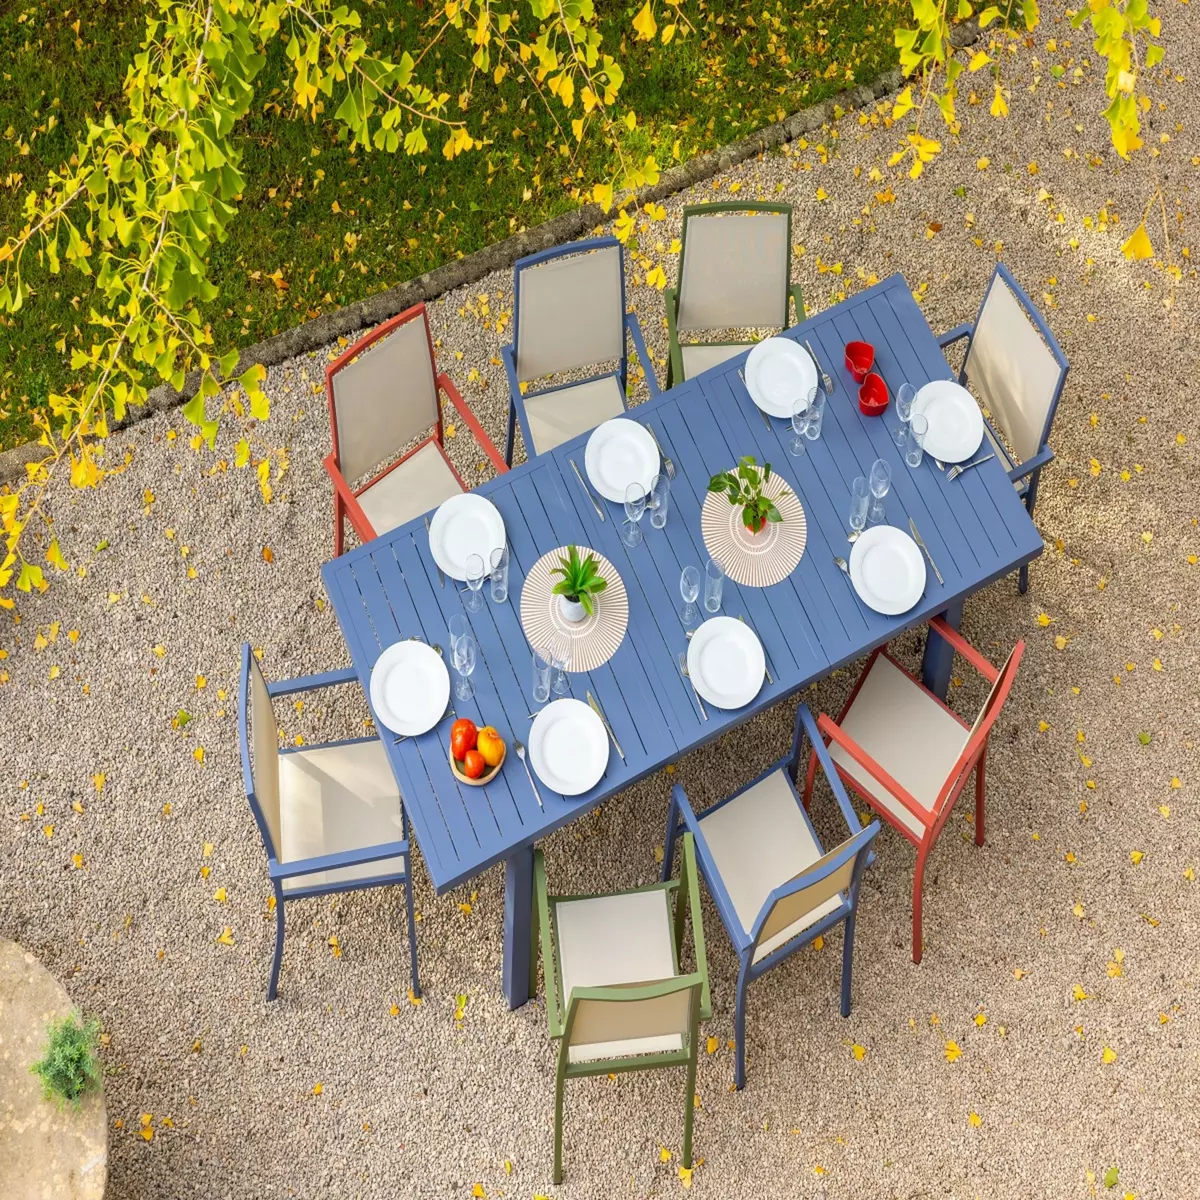 JARDILINE Table de jardin extensible - 8/10 places - Aluminium - Gris bleuté - SANTORIN